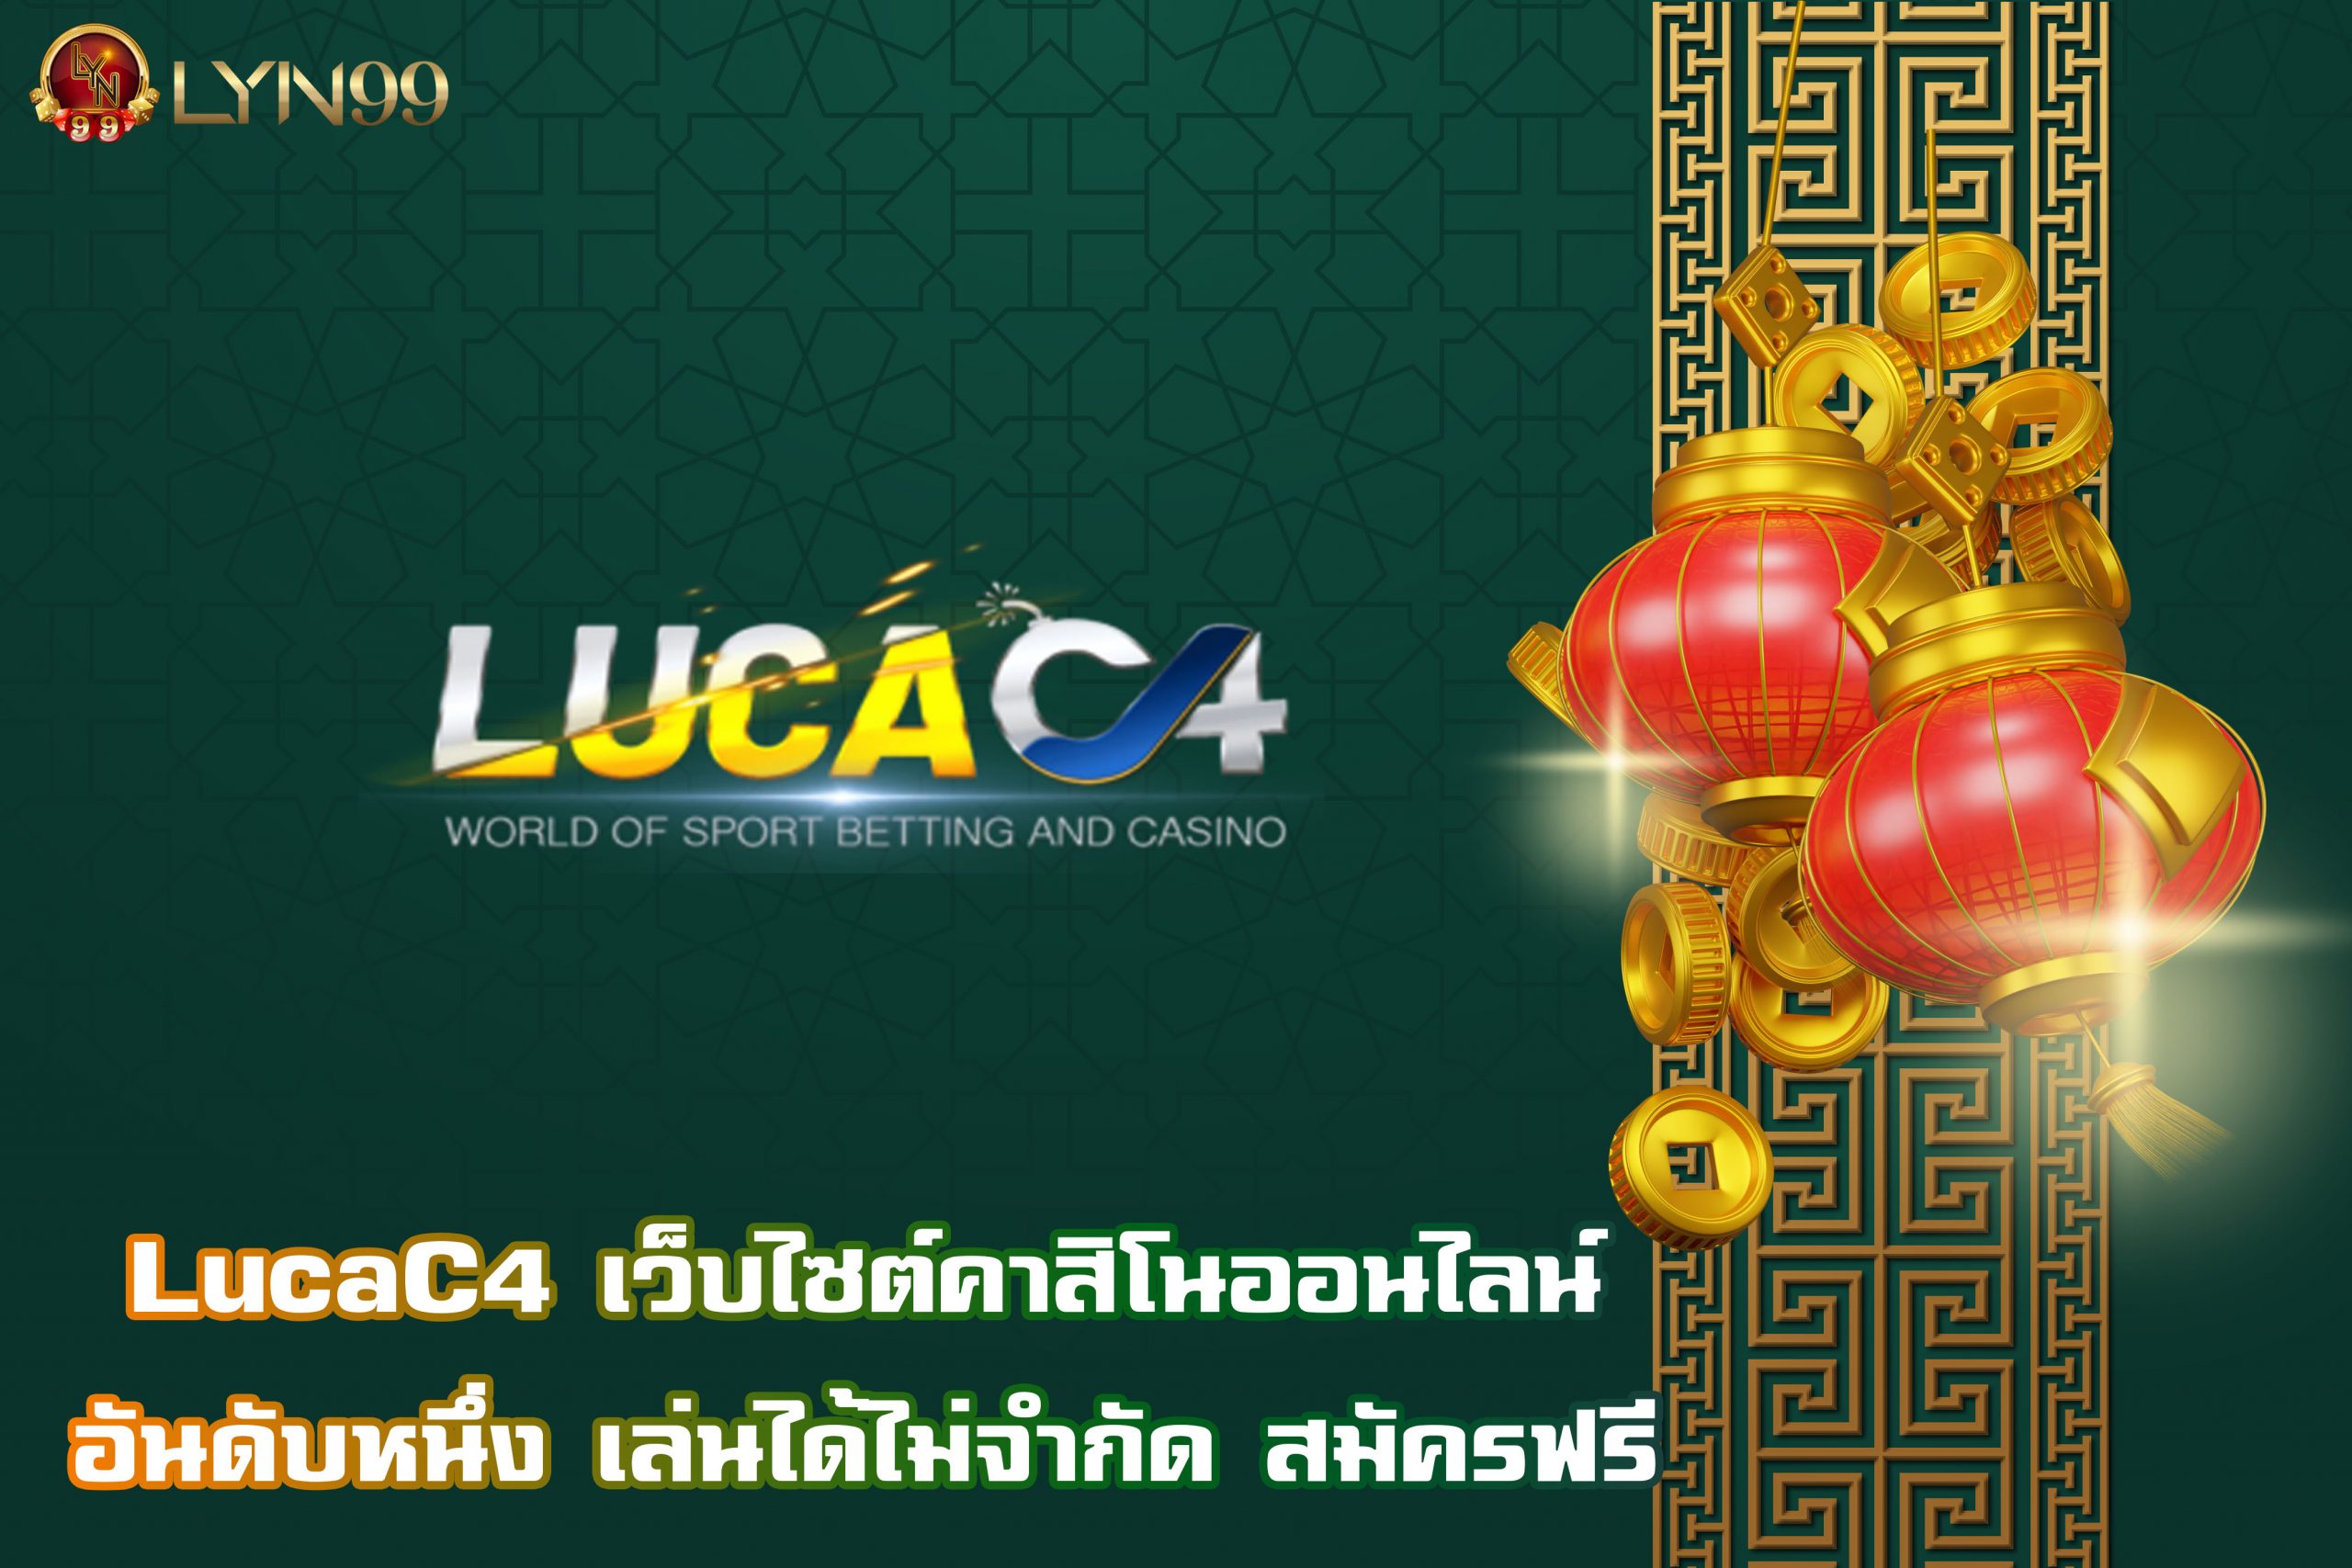 LucaC4 เว็บไซต์คาสิโนออนไลน์อันดับหนึ่ง เล่นได้ไม่จำกัด สมัครฟรี